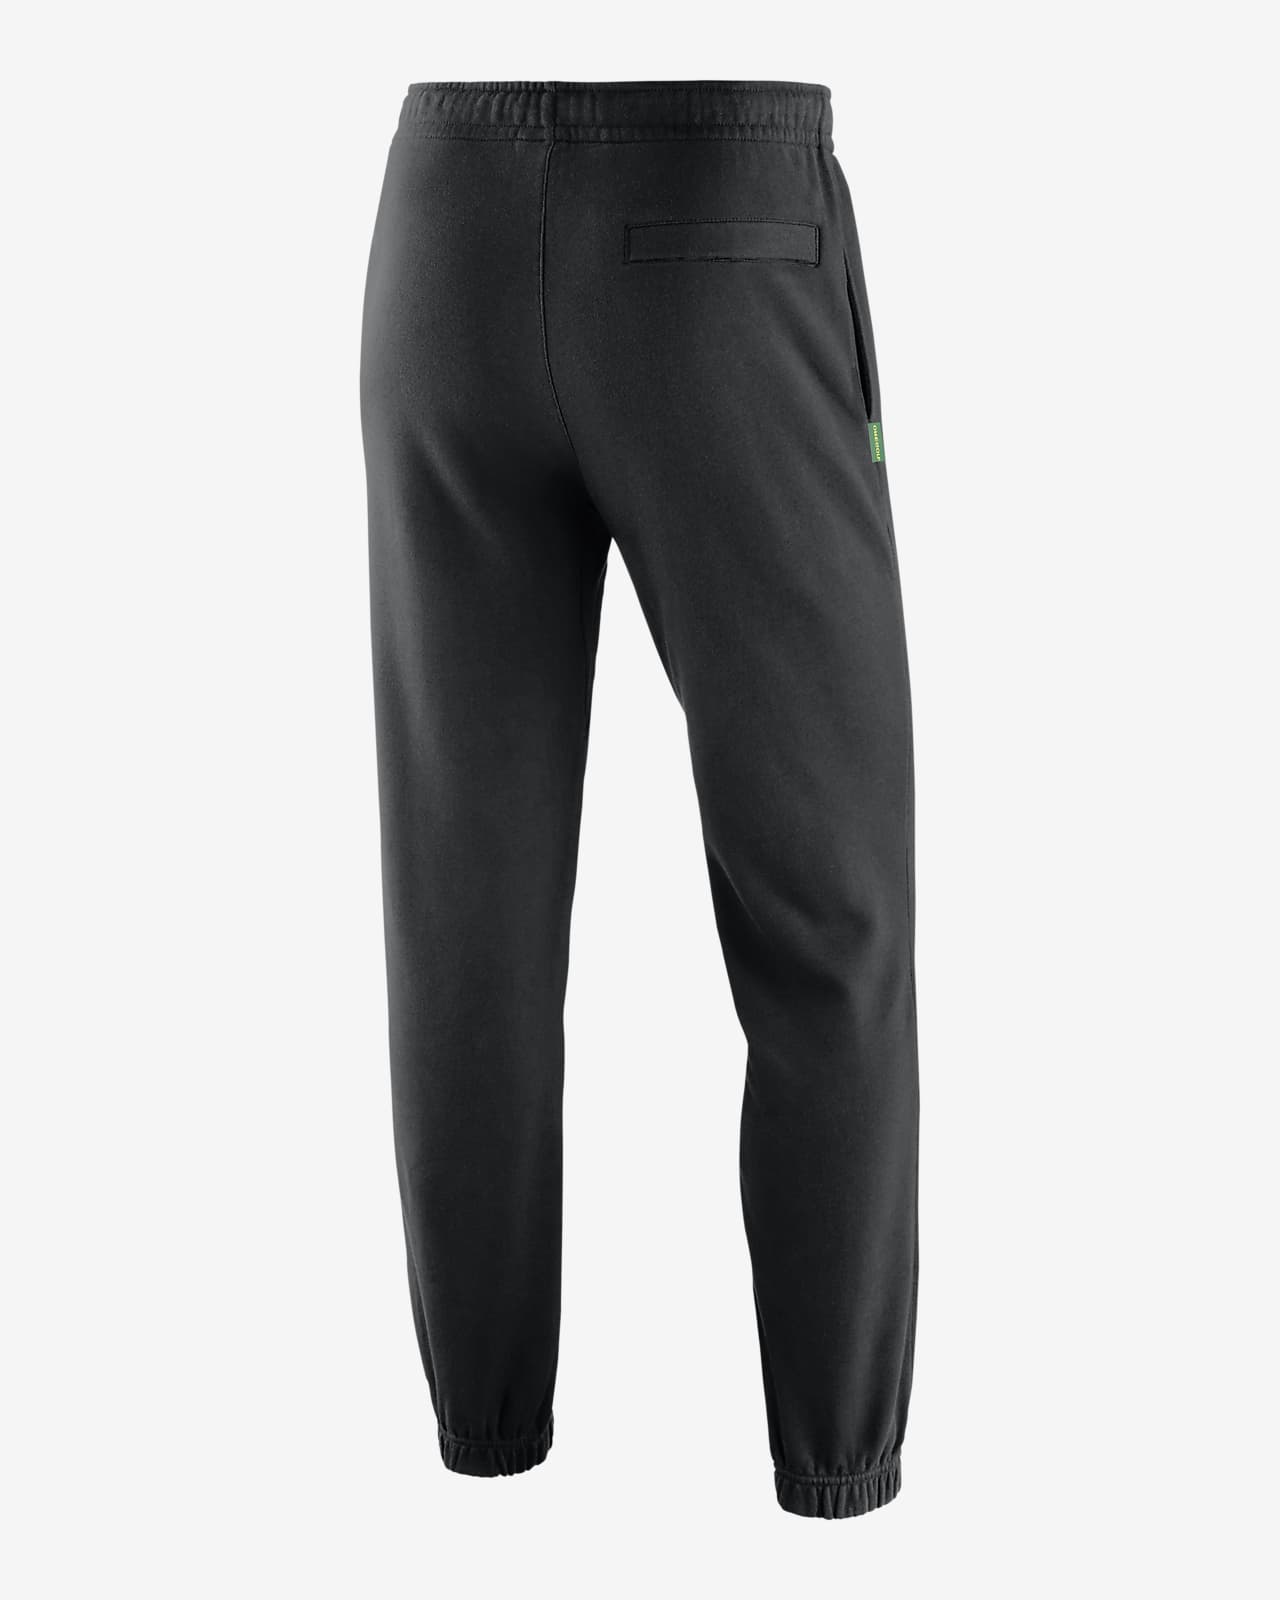 Nike Men's Dri-FIT Phenom Elite Woven Running Pants $ 95 | TYLER'S